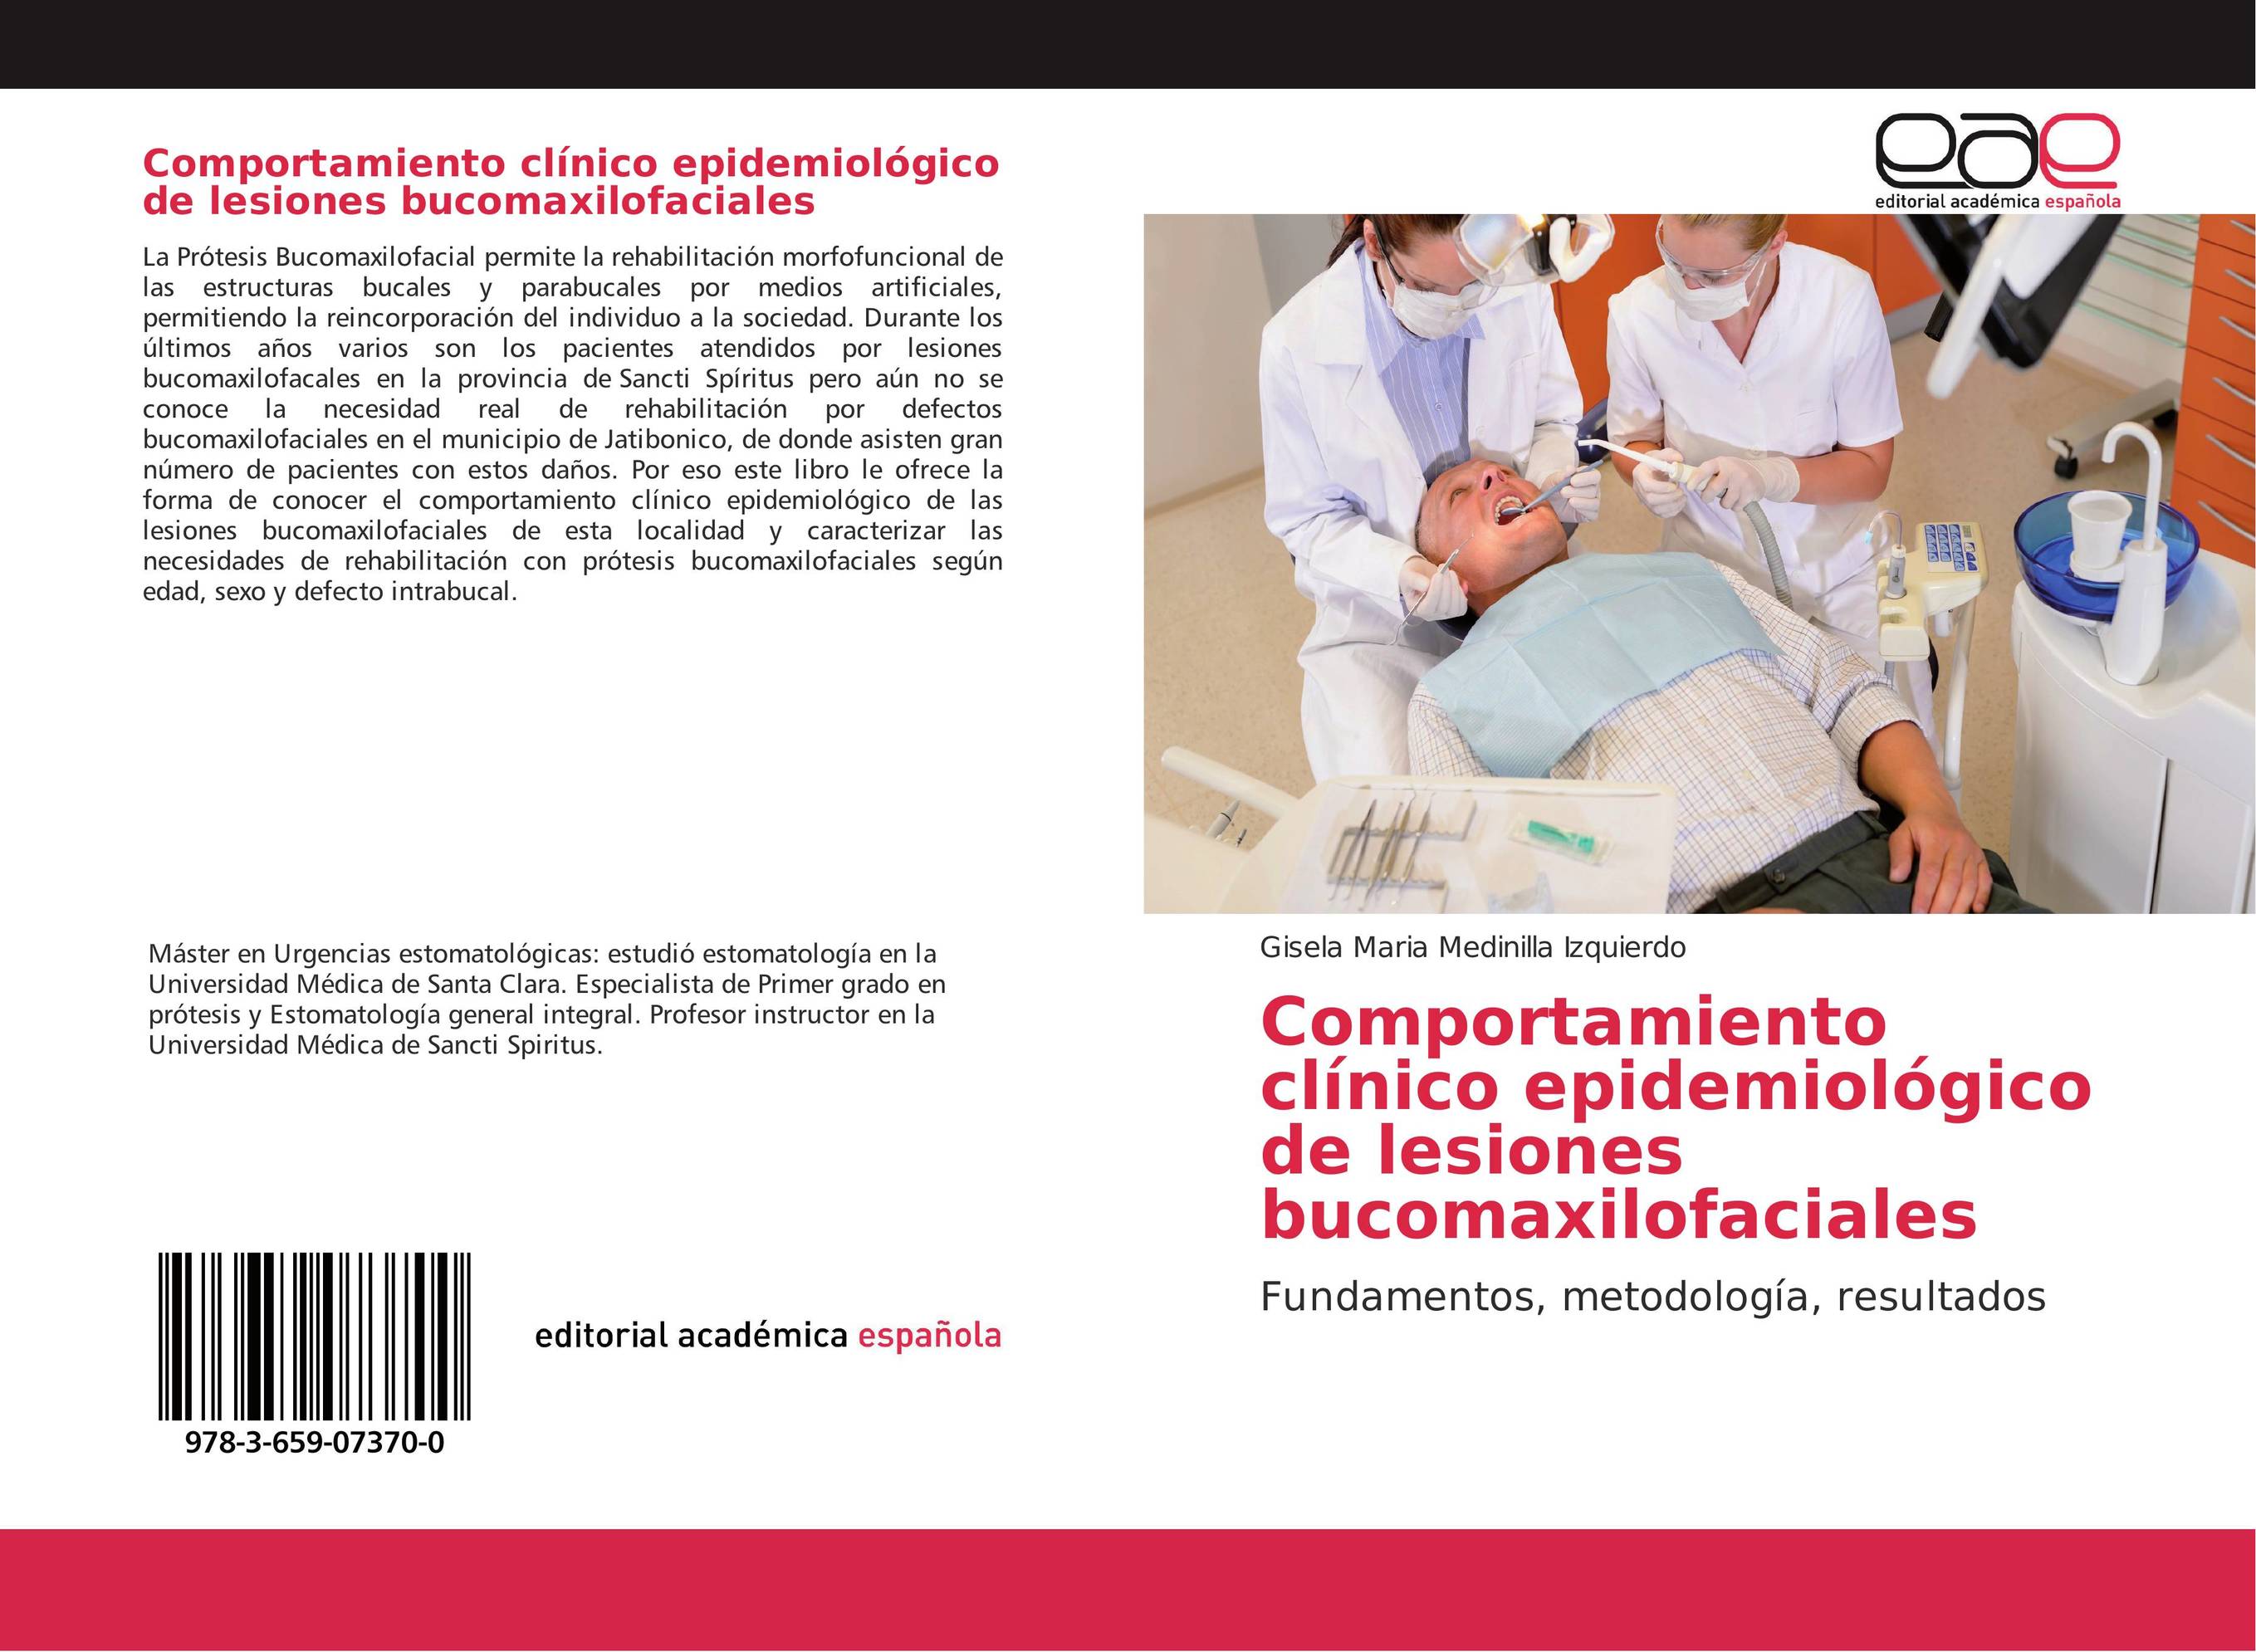 Comportamiento clínico epidemiológico de lesiones bucomaxilofaciales